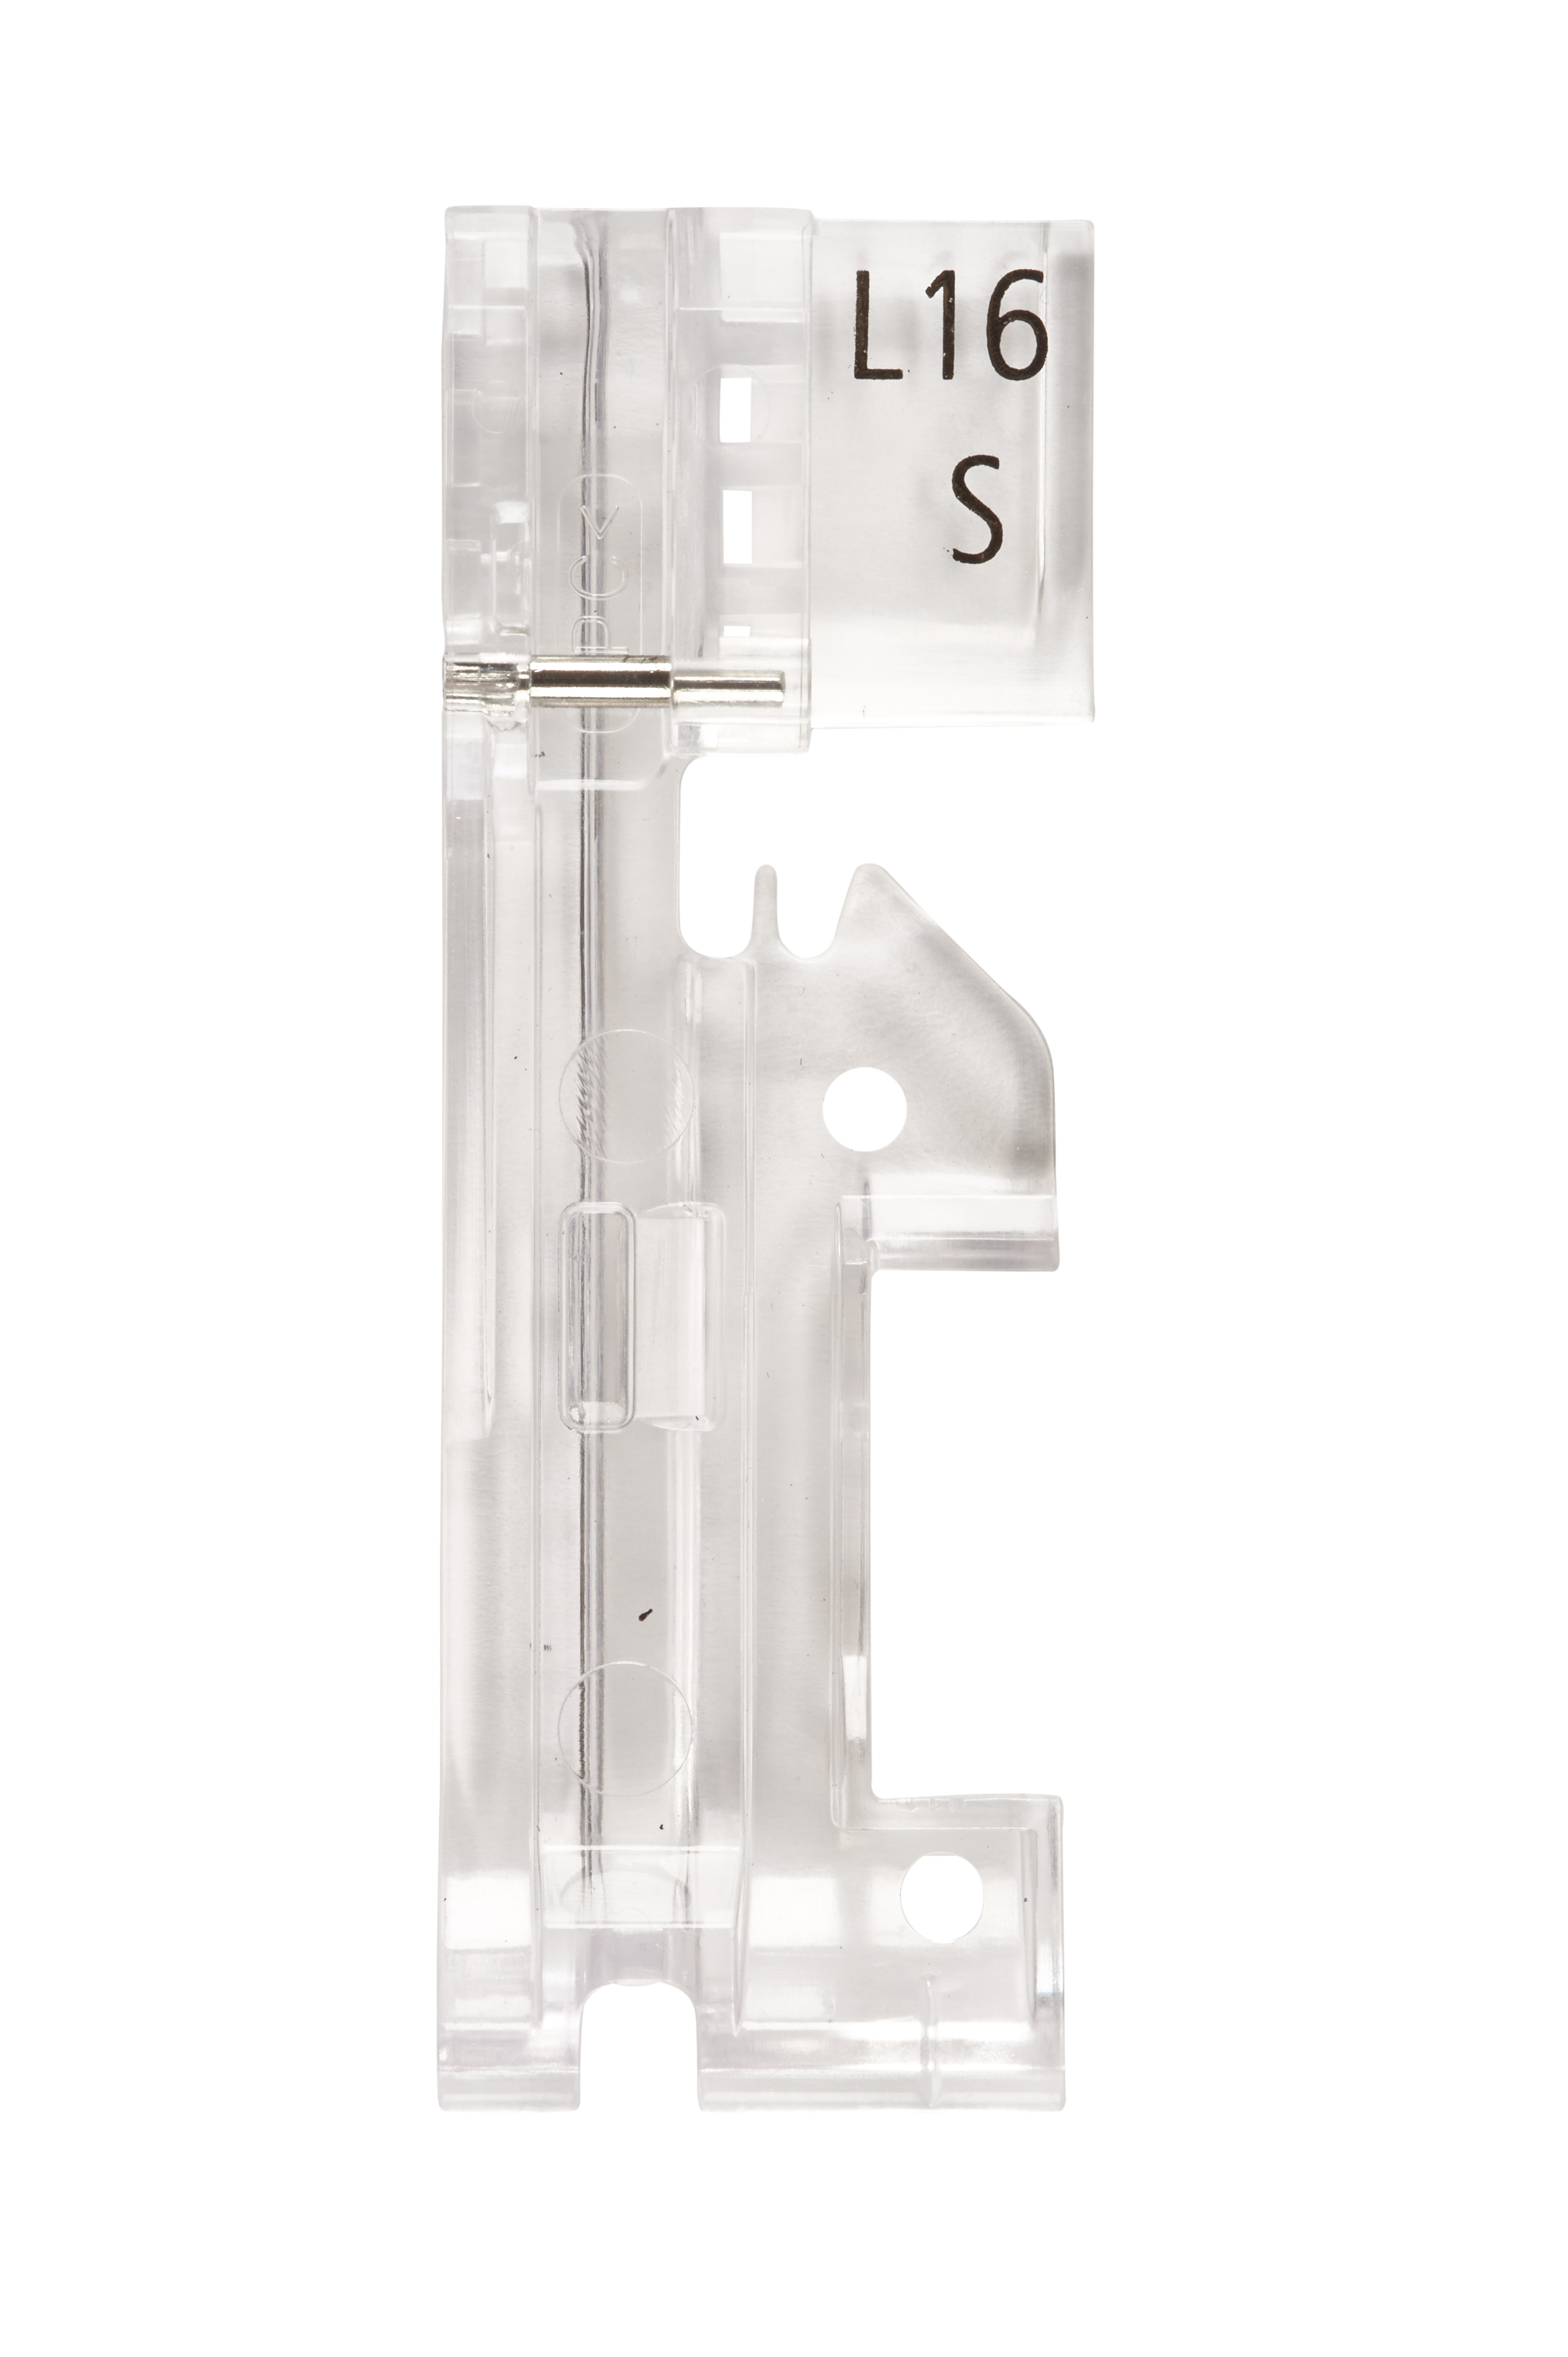 Bernina Paspelfuss klein 3mm #L16 S für L850